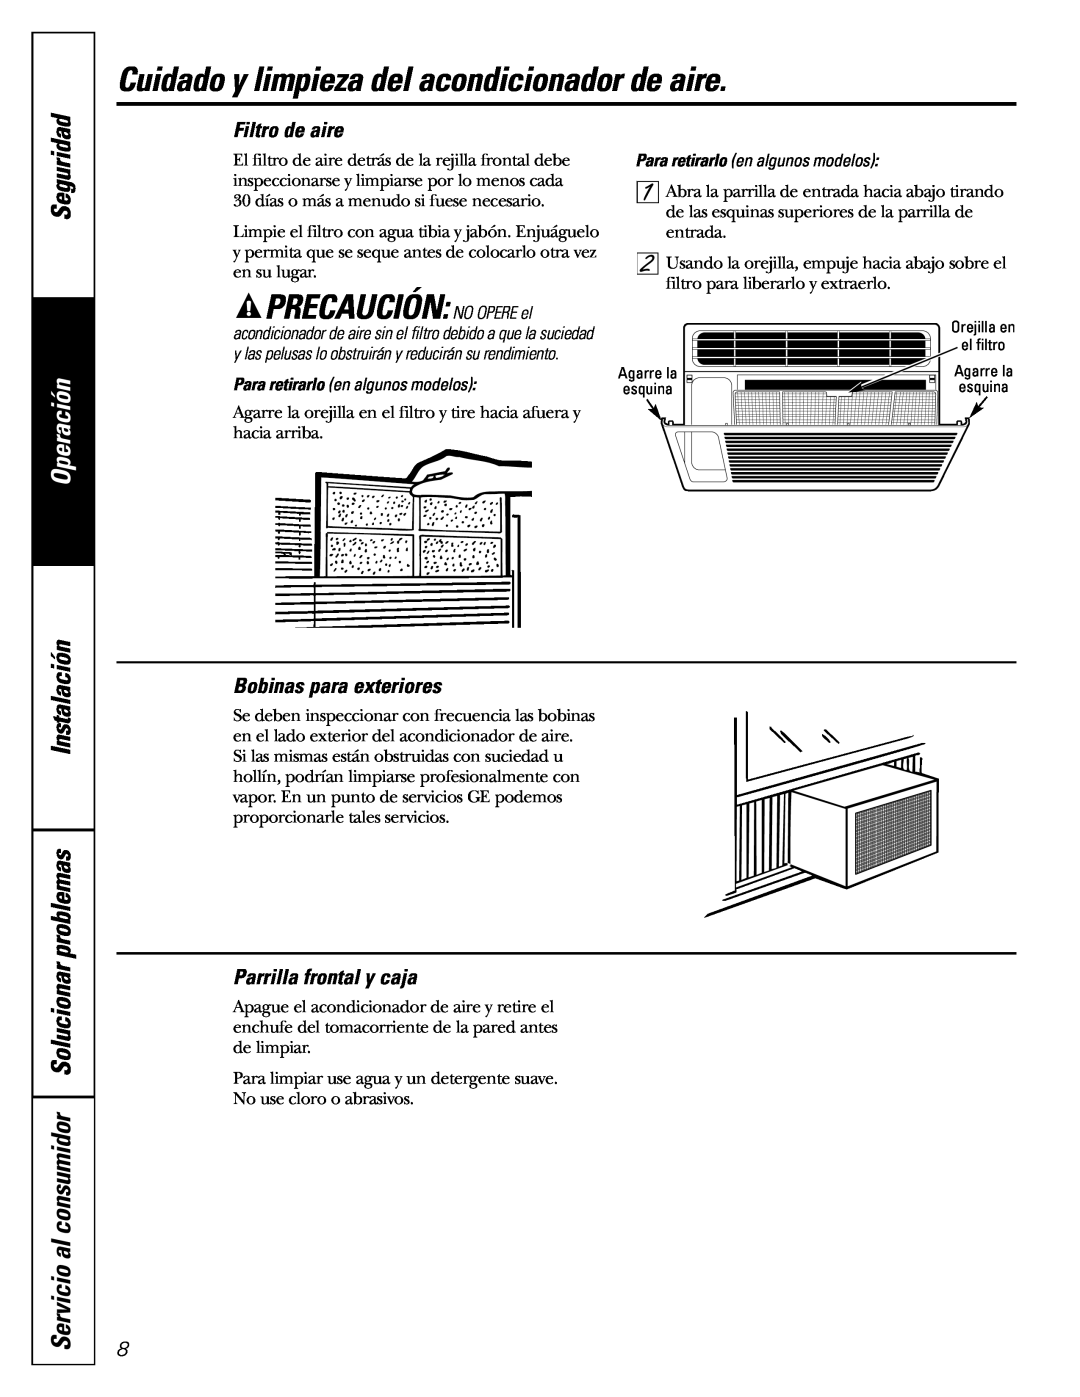 GE AGL06 Cuidado y limpieza del acondicionador de aire, PRECAUCIÓN: NO OPERE el, Seguridad, Filtro de aire, Operación 